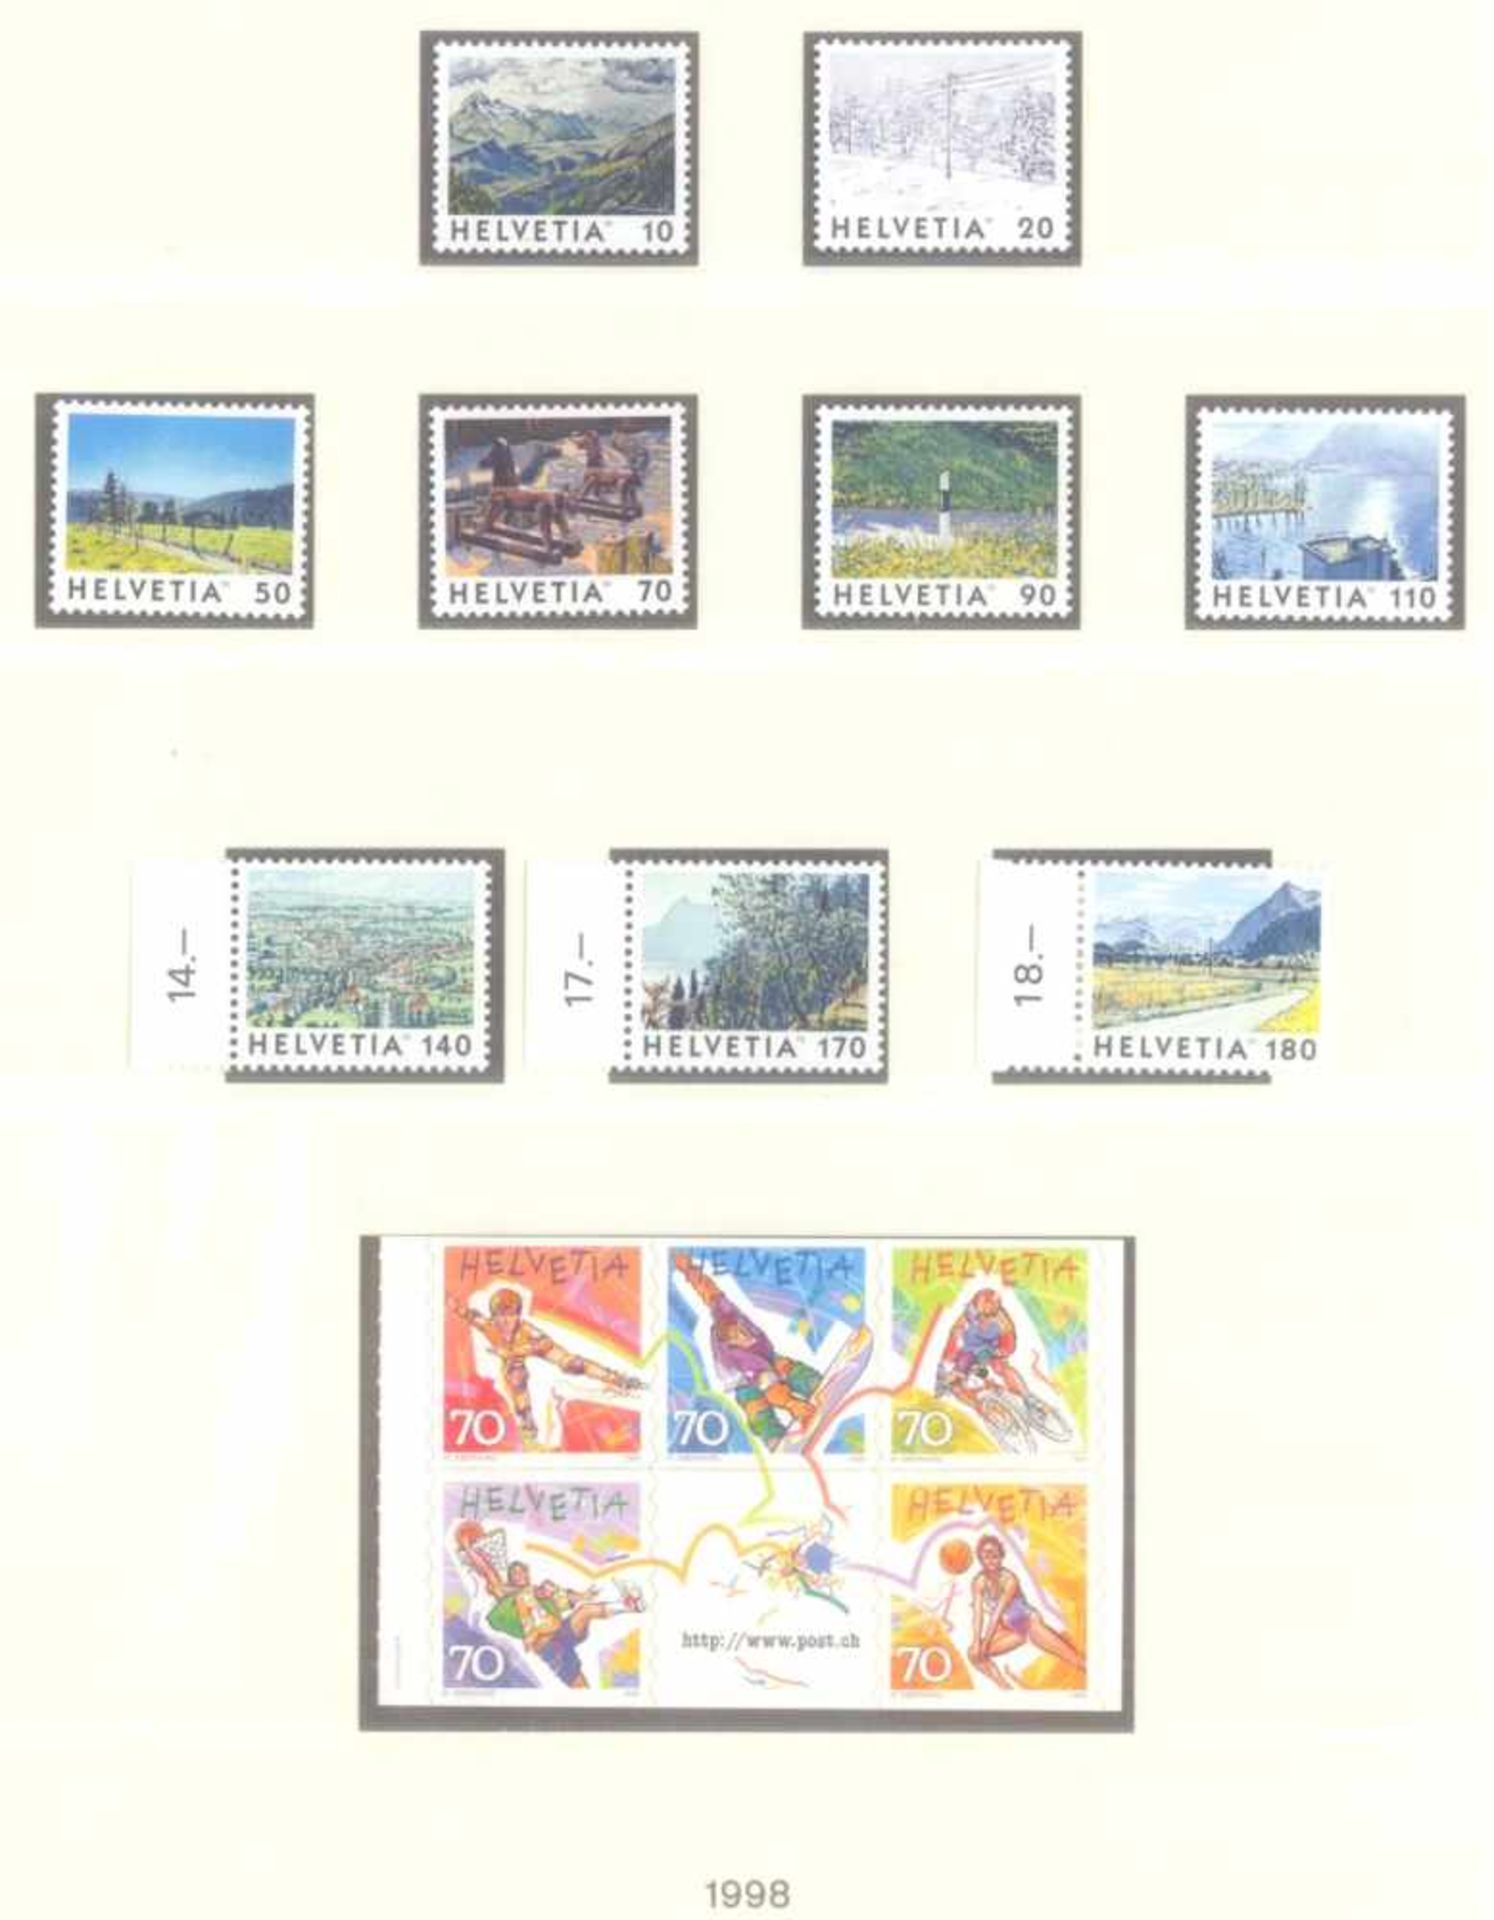 SCHWEIZ 1991-2003; mit 416,- SCHWEIZER FRANKEN NOMINALE!postfrische, komplette Sammlung - nach den - Bild 4 aus 8